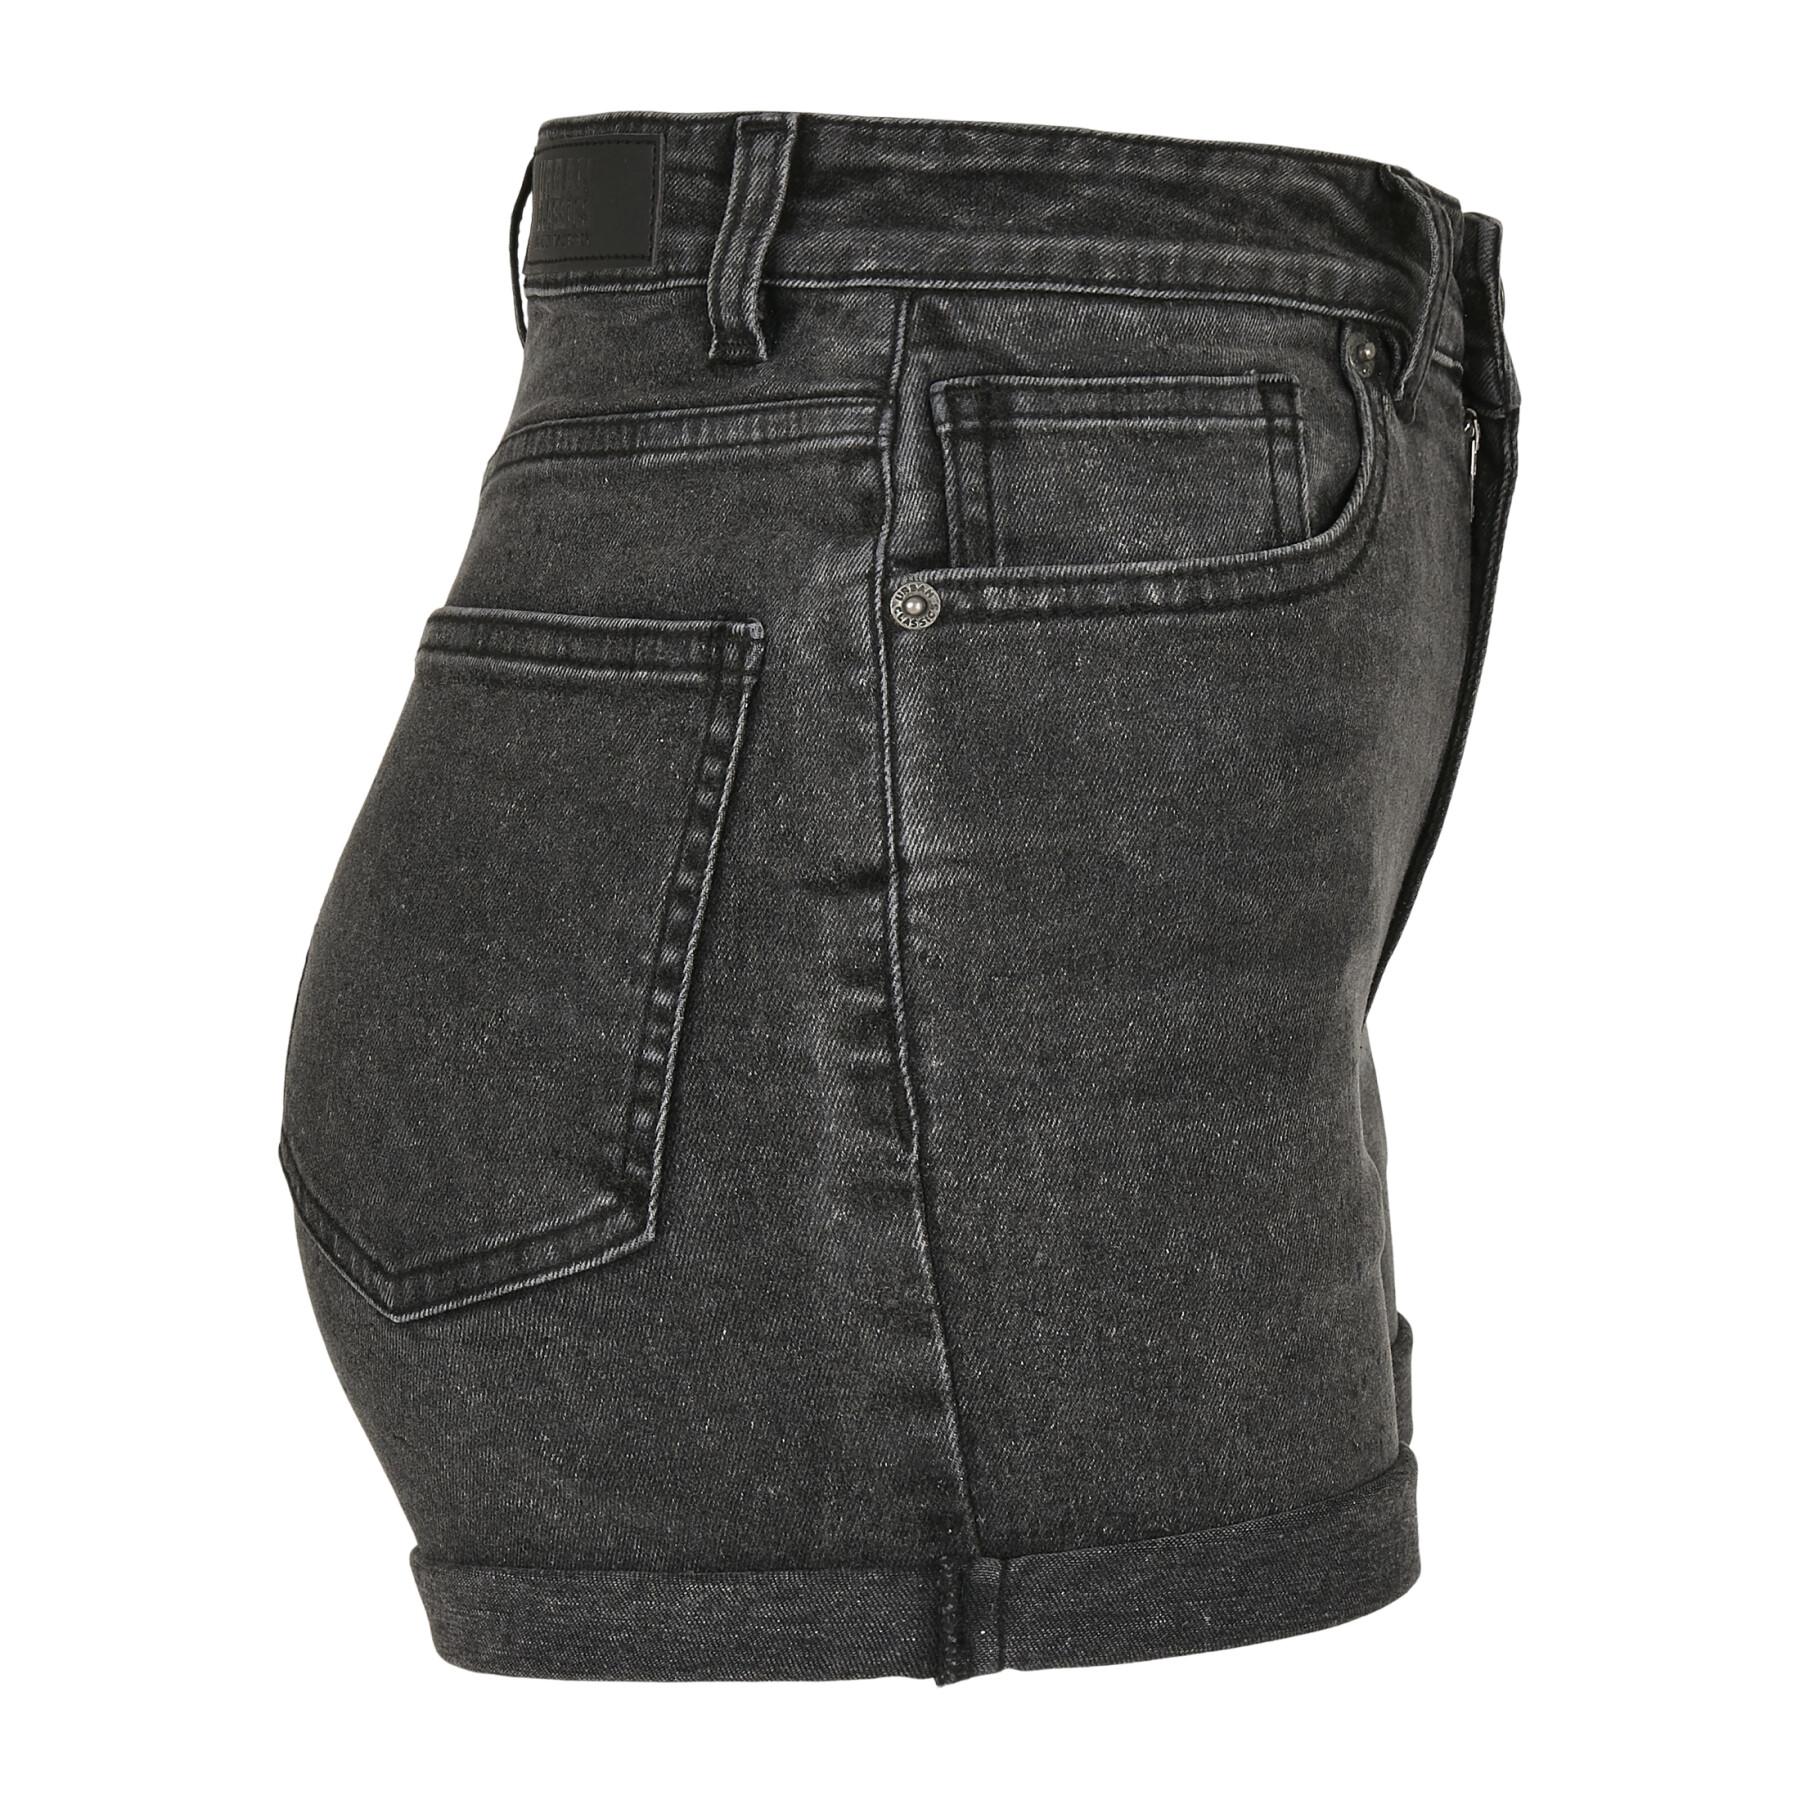 Pantalón corto jean mujer Urban Classics 5 pocket